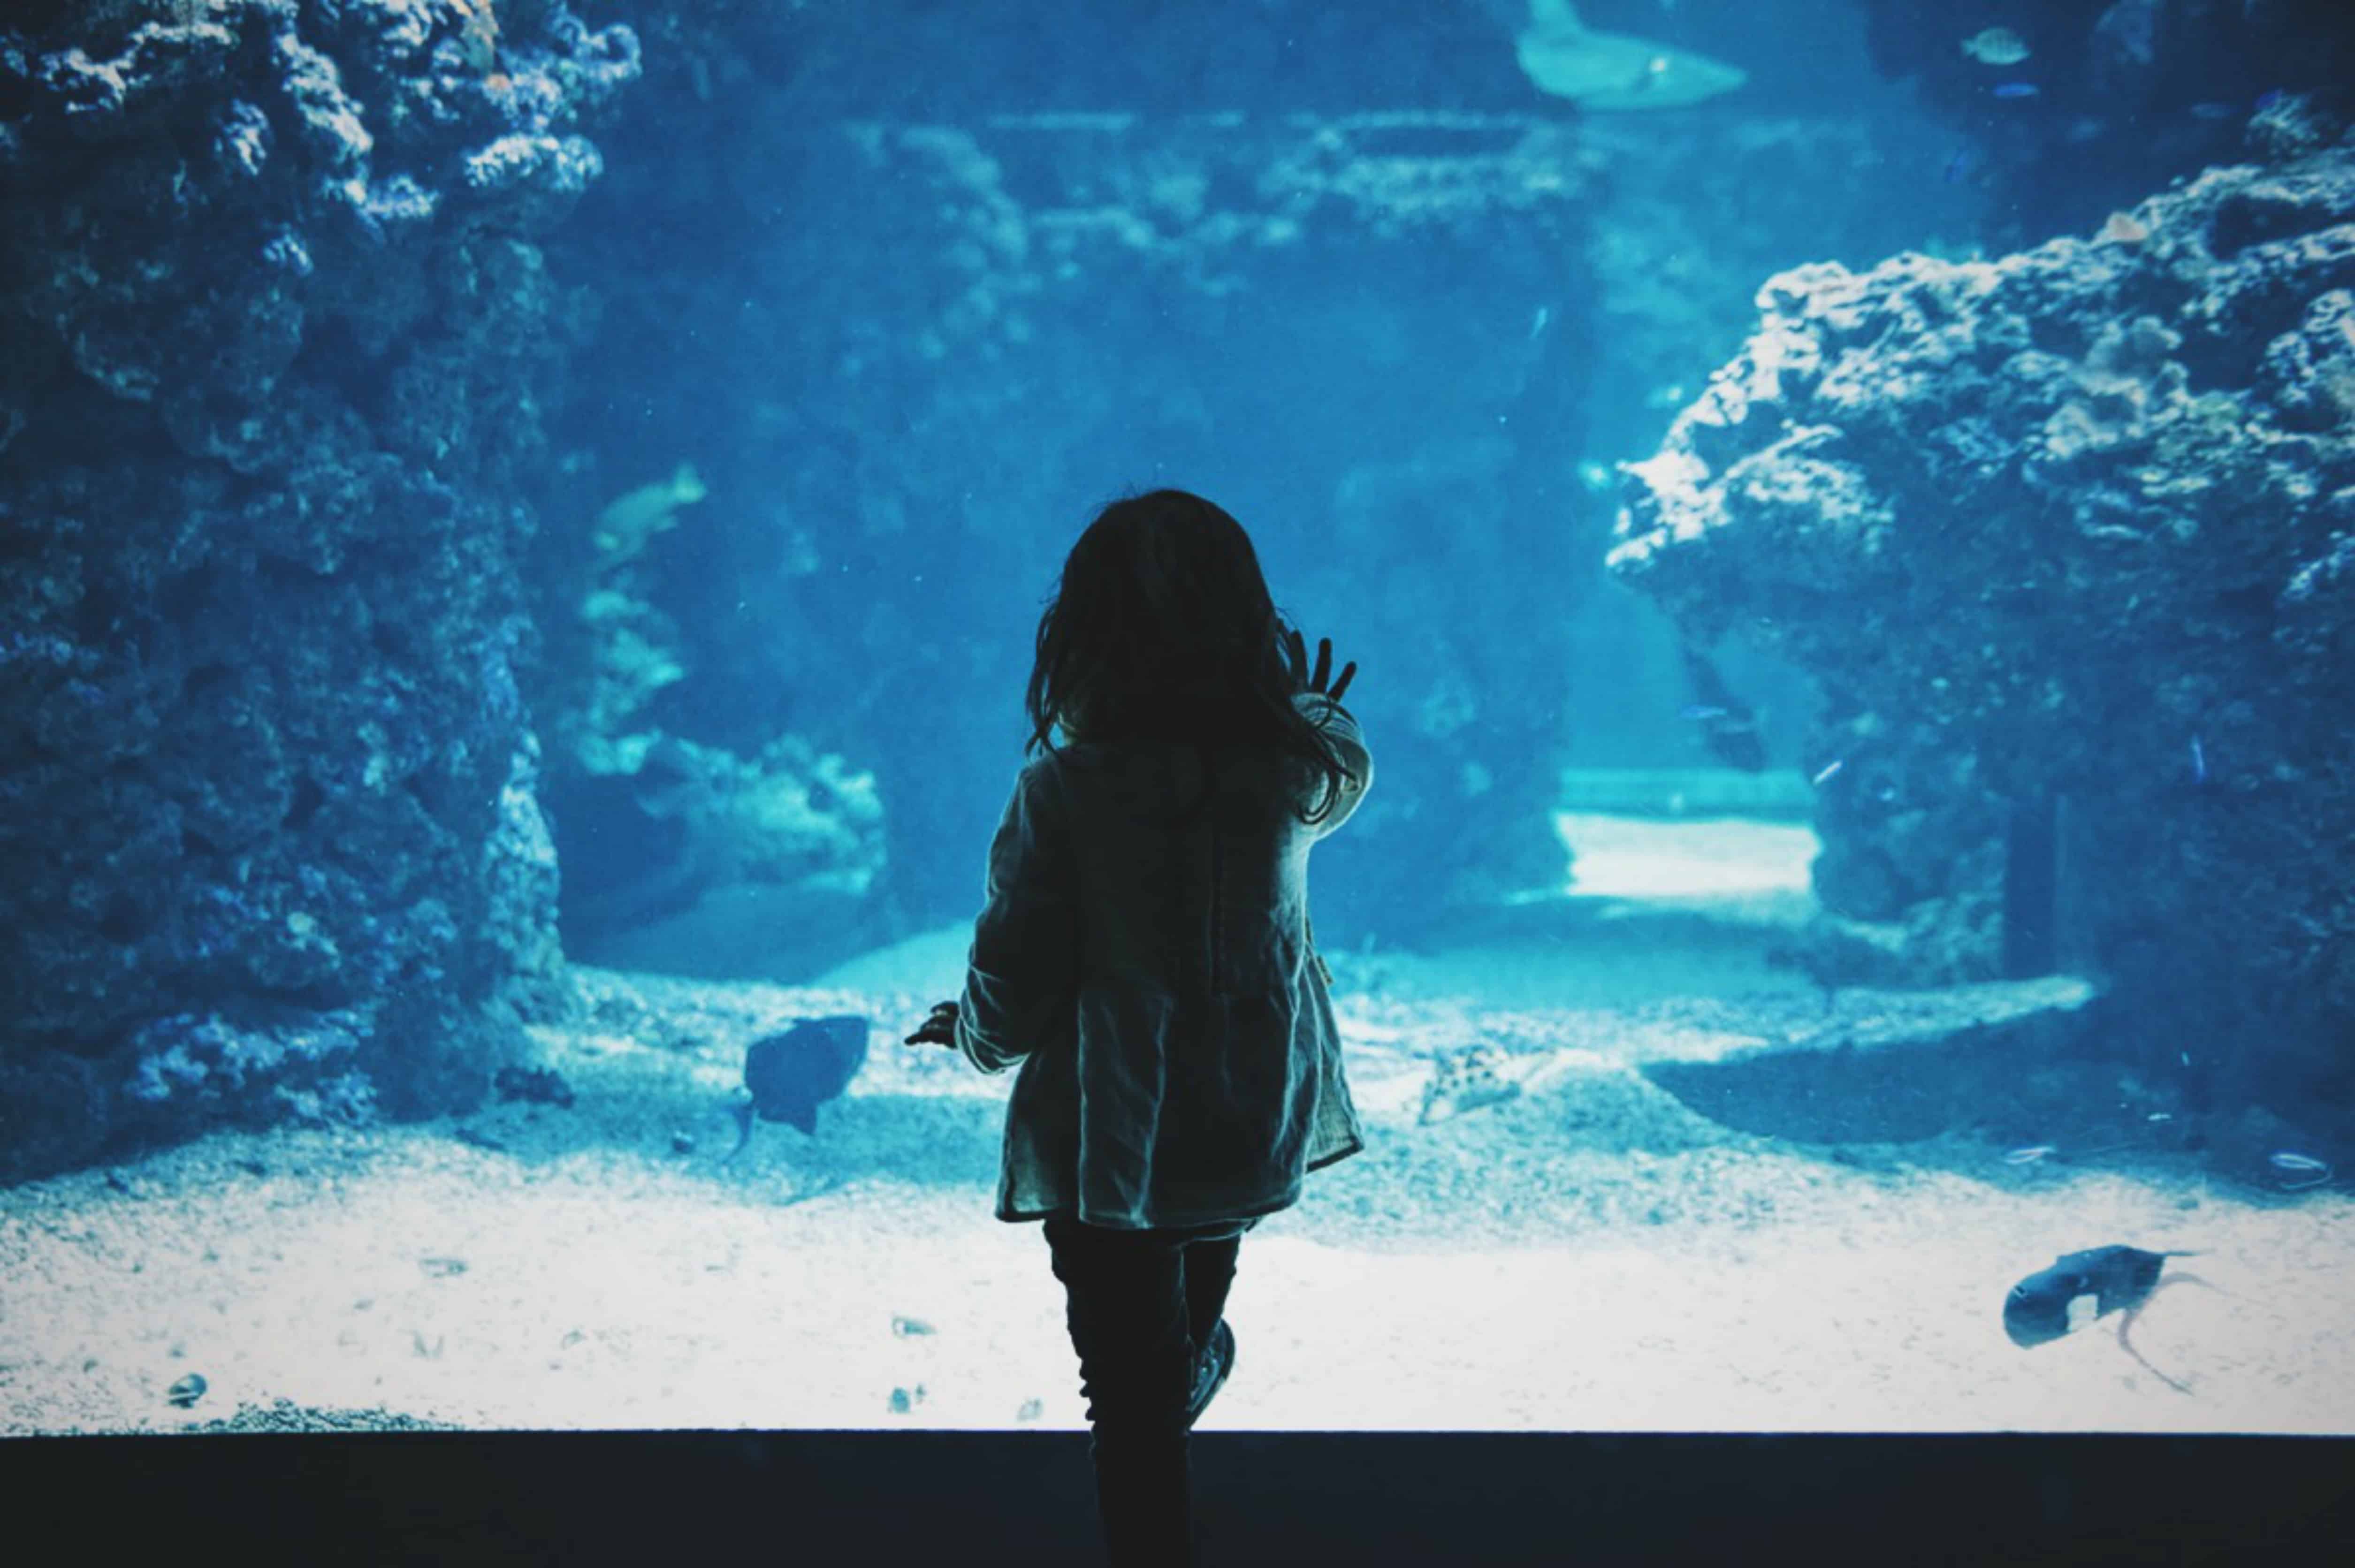 aquarium | discover tulsa | things to do in tulsa | oklahoma aquarium visitors guide